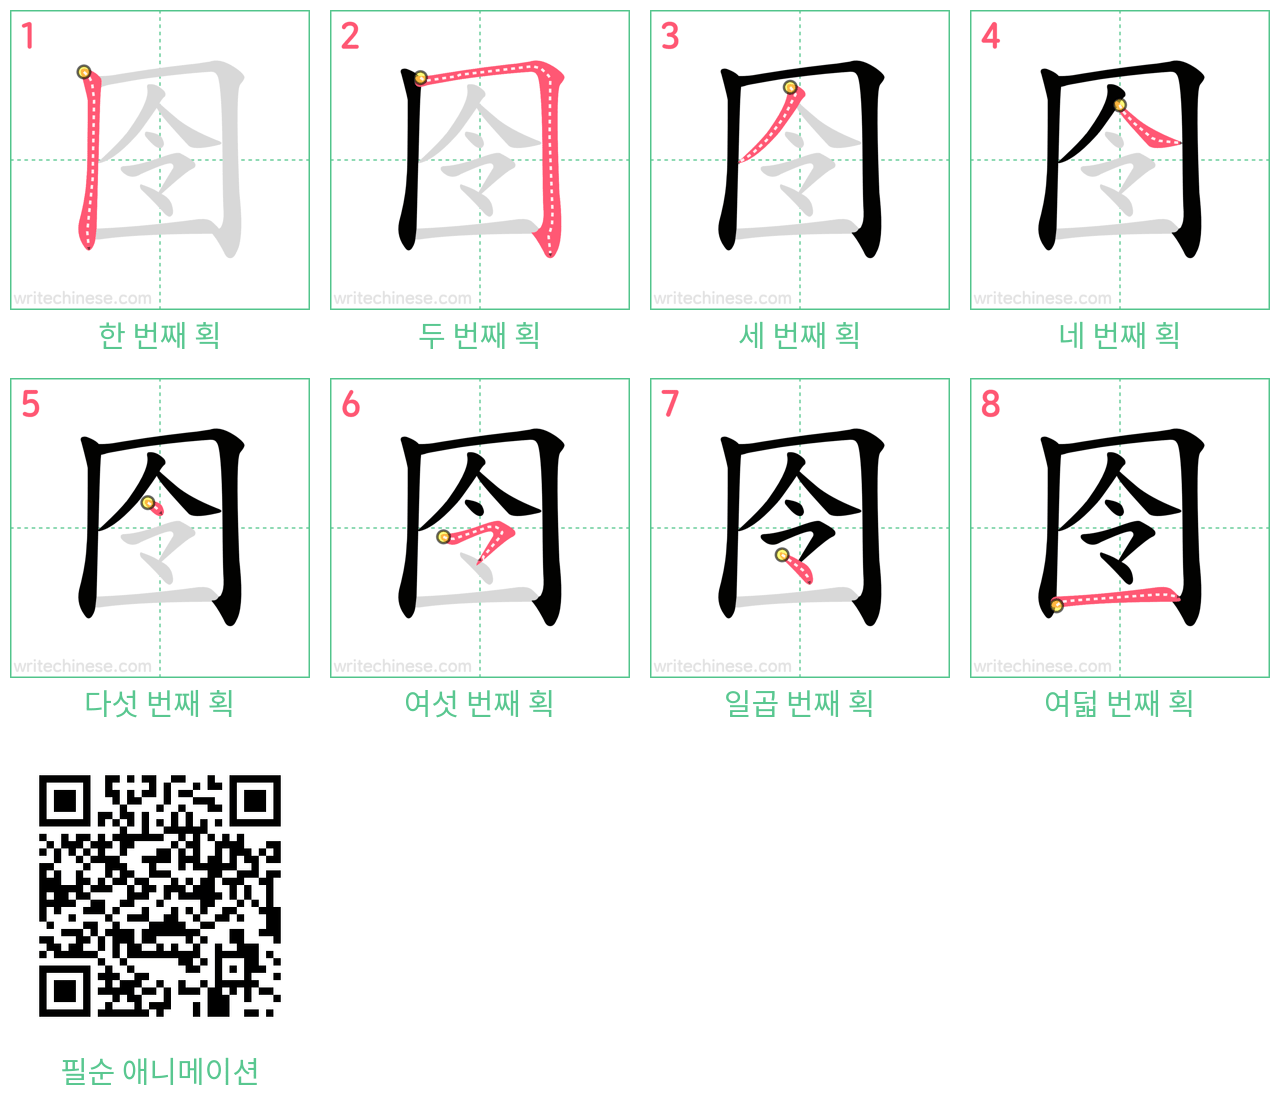 囹 step-by-step stroke order diagrams